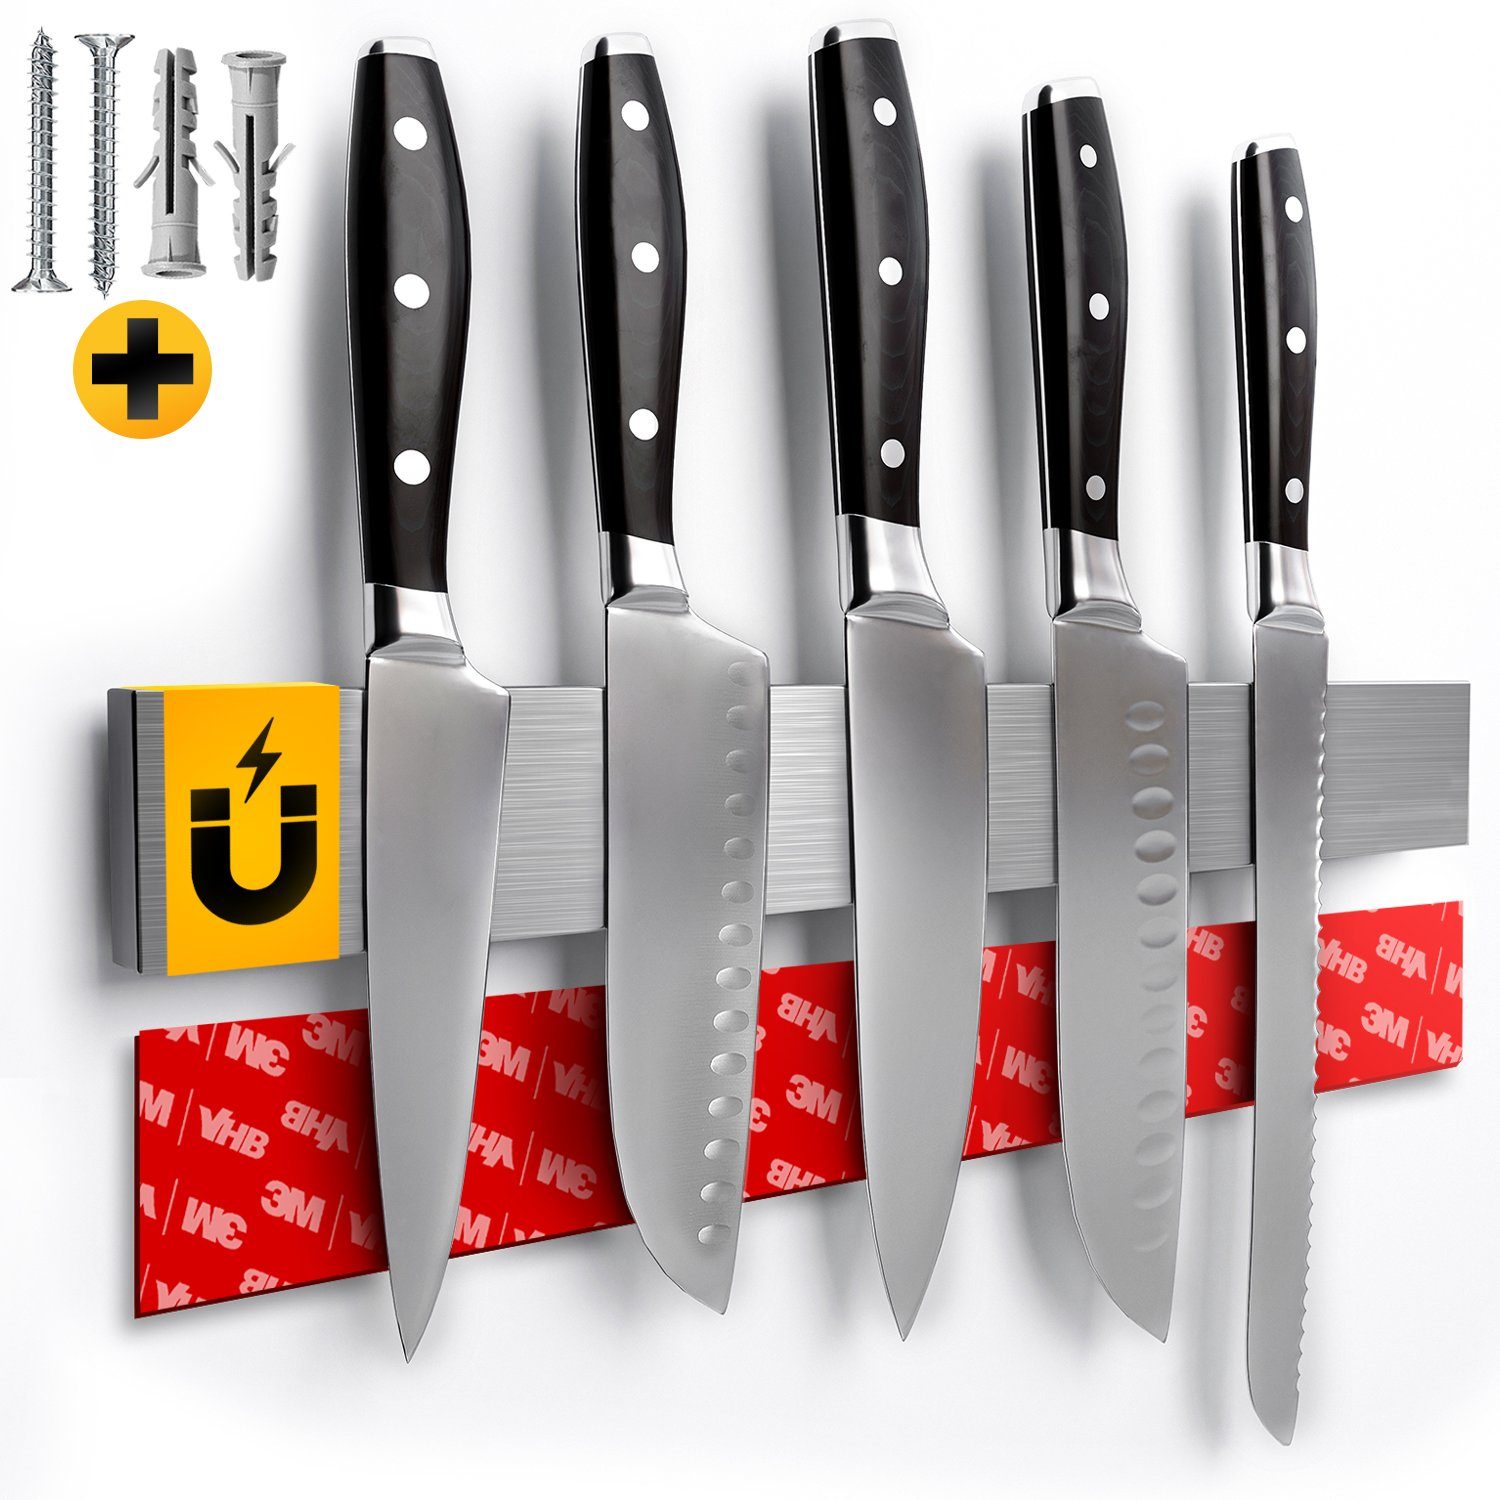 Loco Bird Wand-Magnet Messer-Leiste Magnetleiste Messer 40cm -  selbstklebend mit 3M VHB Klebeband - Messerleiste Edelstahl für  Küchenutensilien oder Werkzeugen - Messerhalter magnetisch Wandmontage für  Küche ohne Bohren (1tlg)